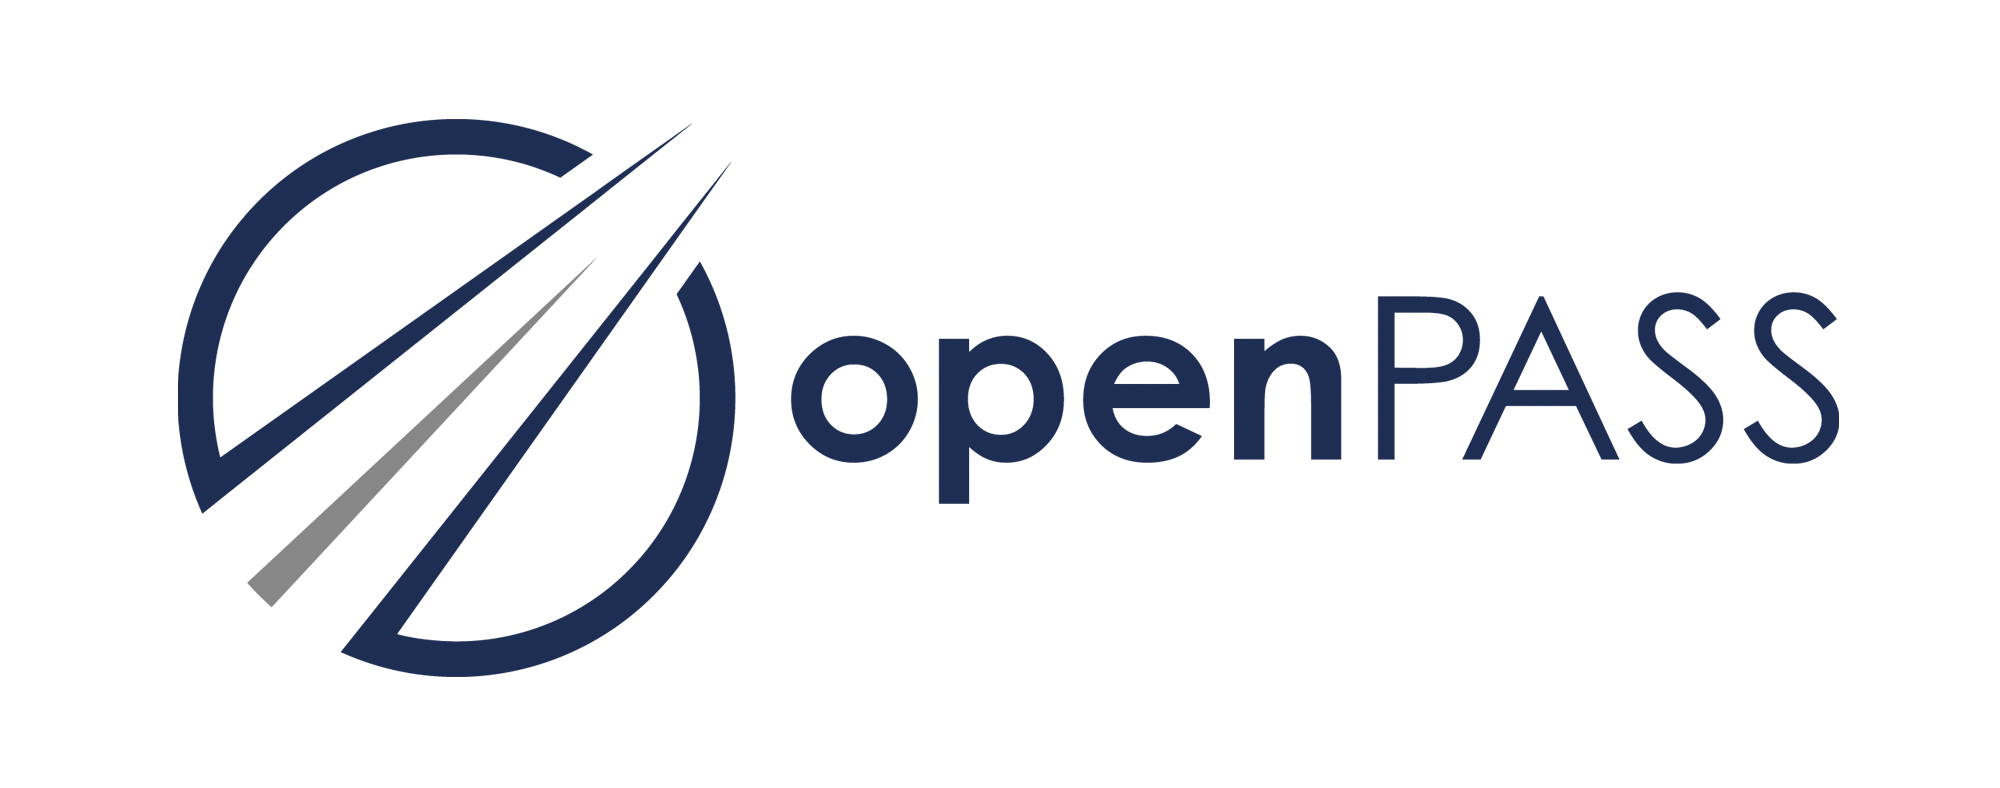 OpenPASS logo.png